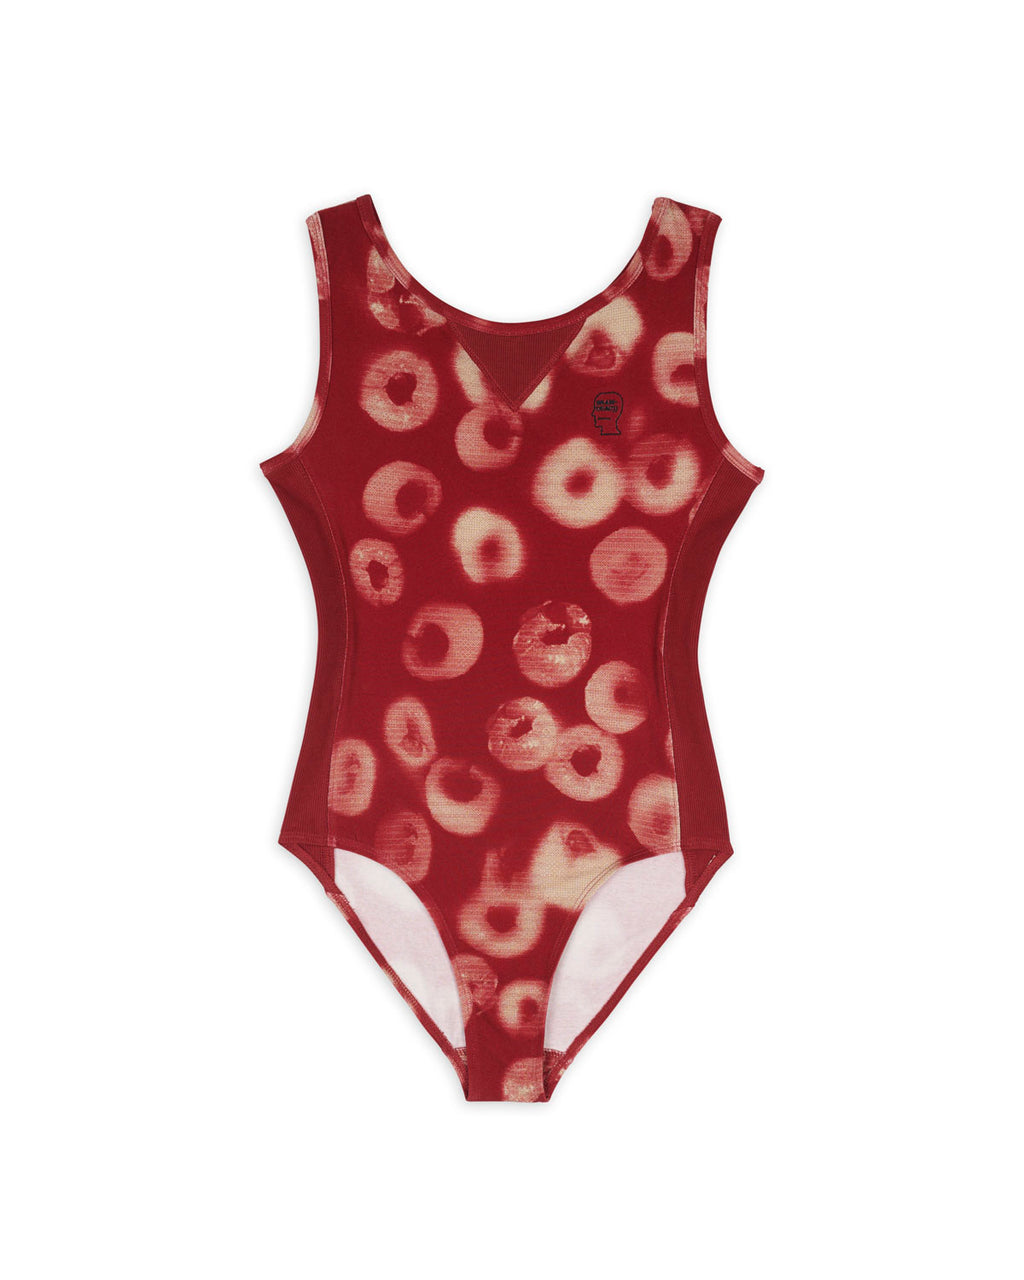 Sponge Dye Bodysuit - Red